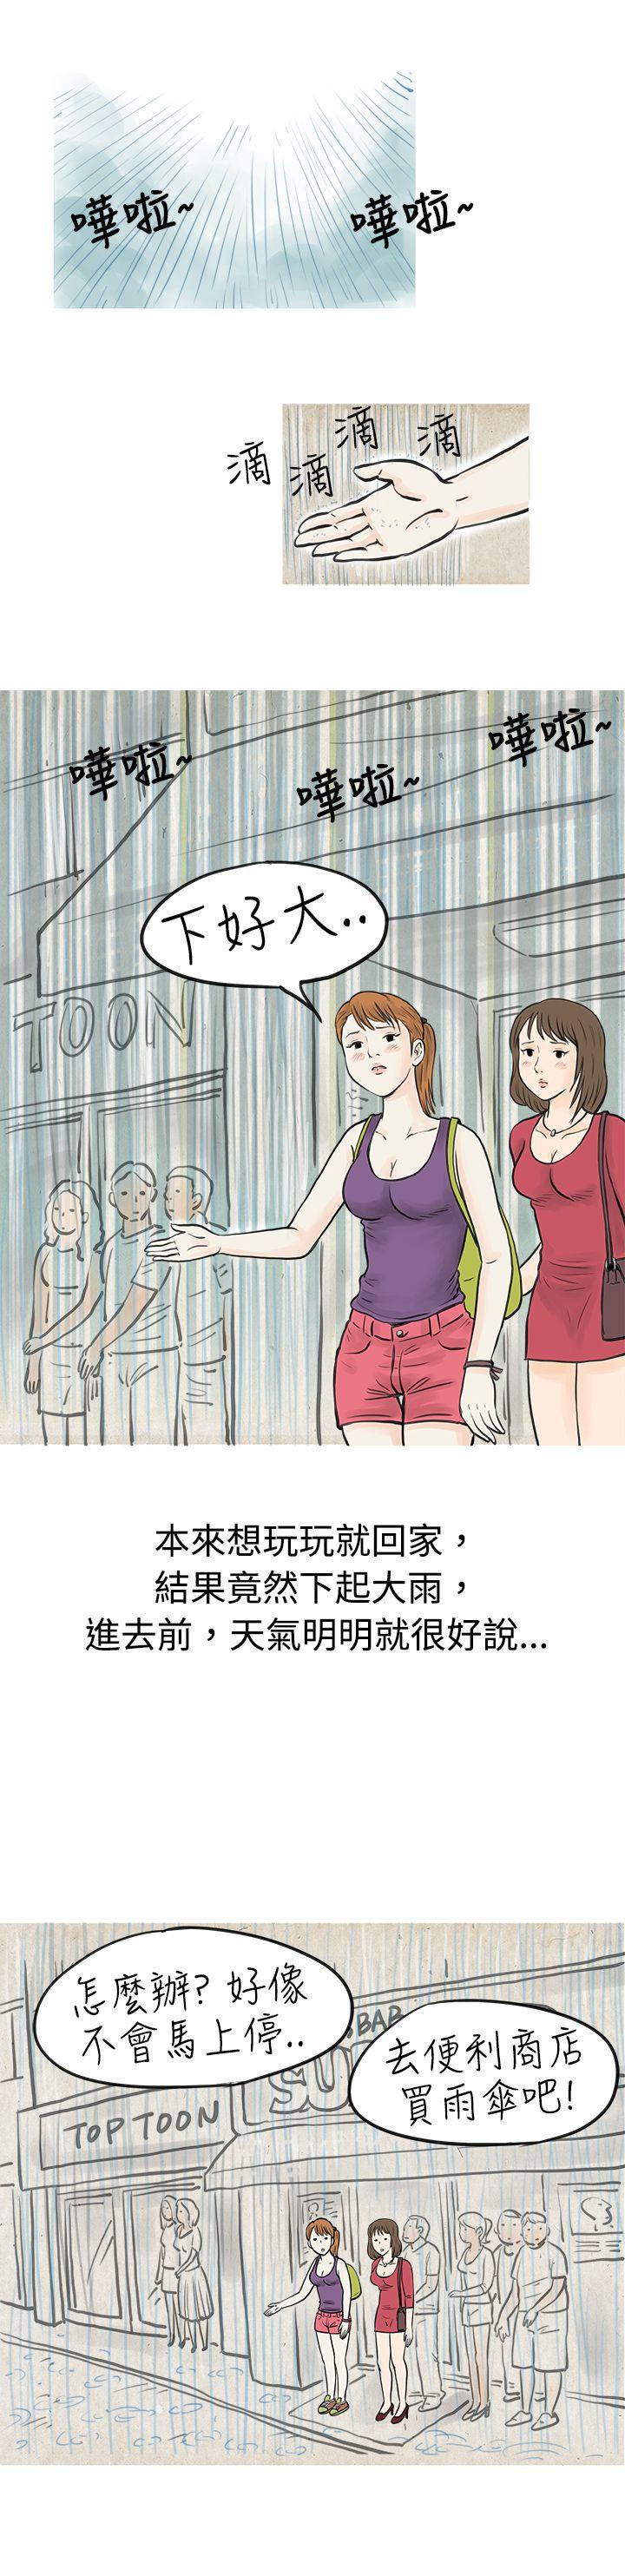 秘密Story  在弘大夜店的豔遇故事(上) 漫画图片5.jpg